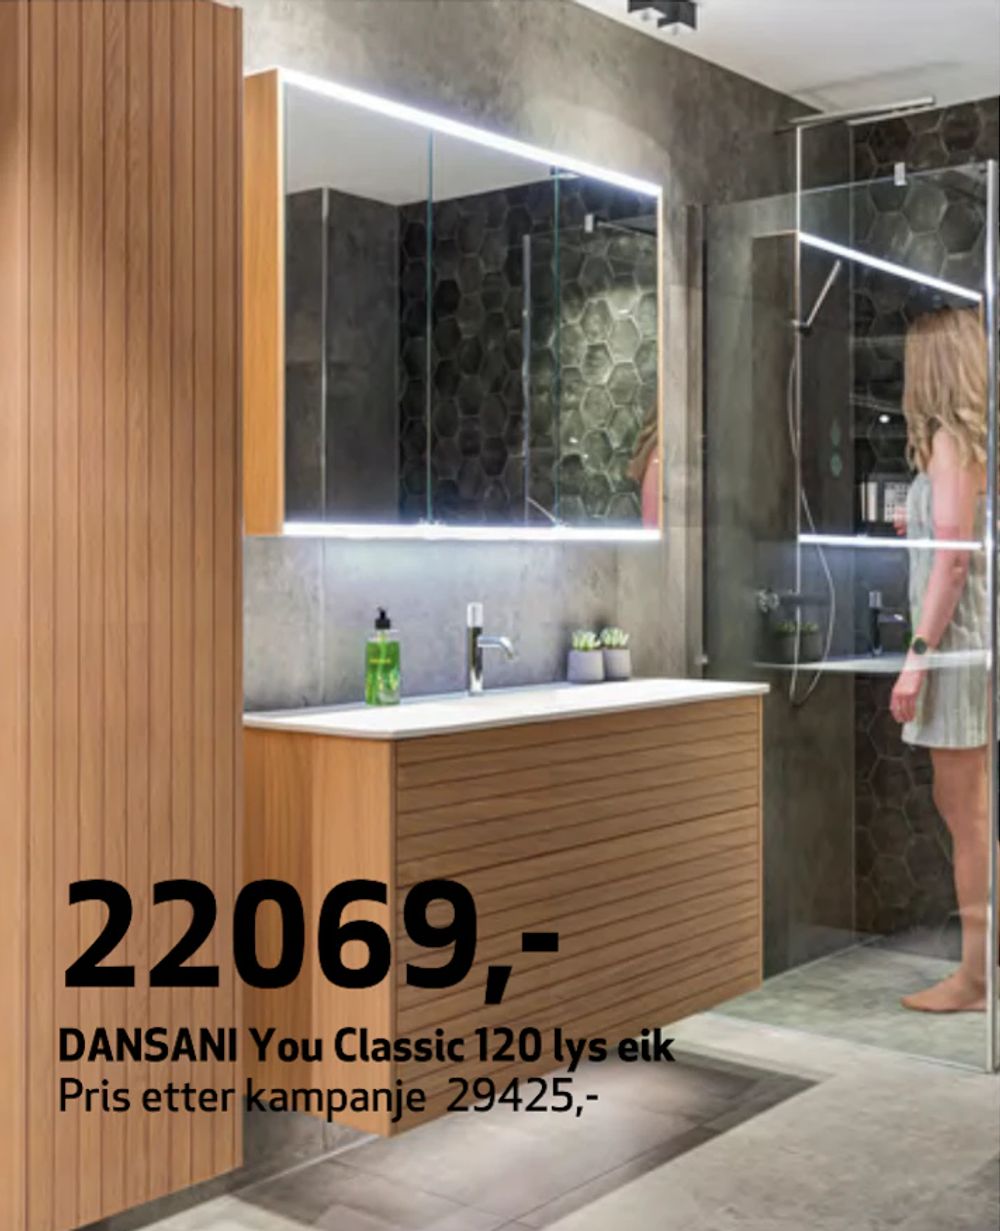 Tilbud på DANSANI You Classic 120 lys eik fra Flisekompaniet til 22 069 kr